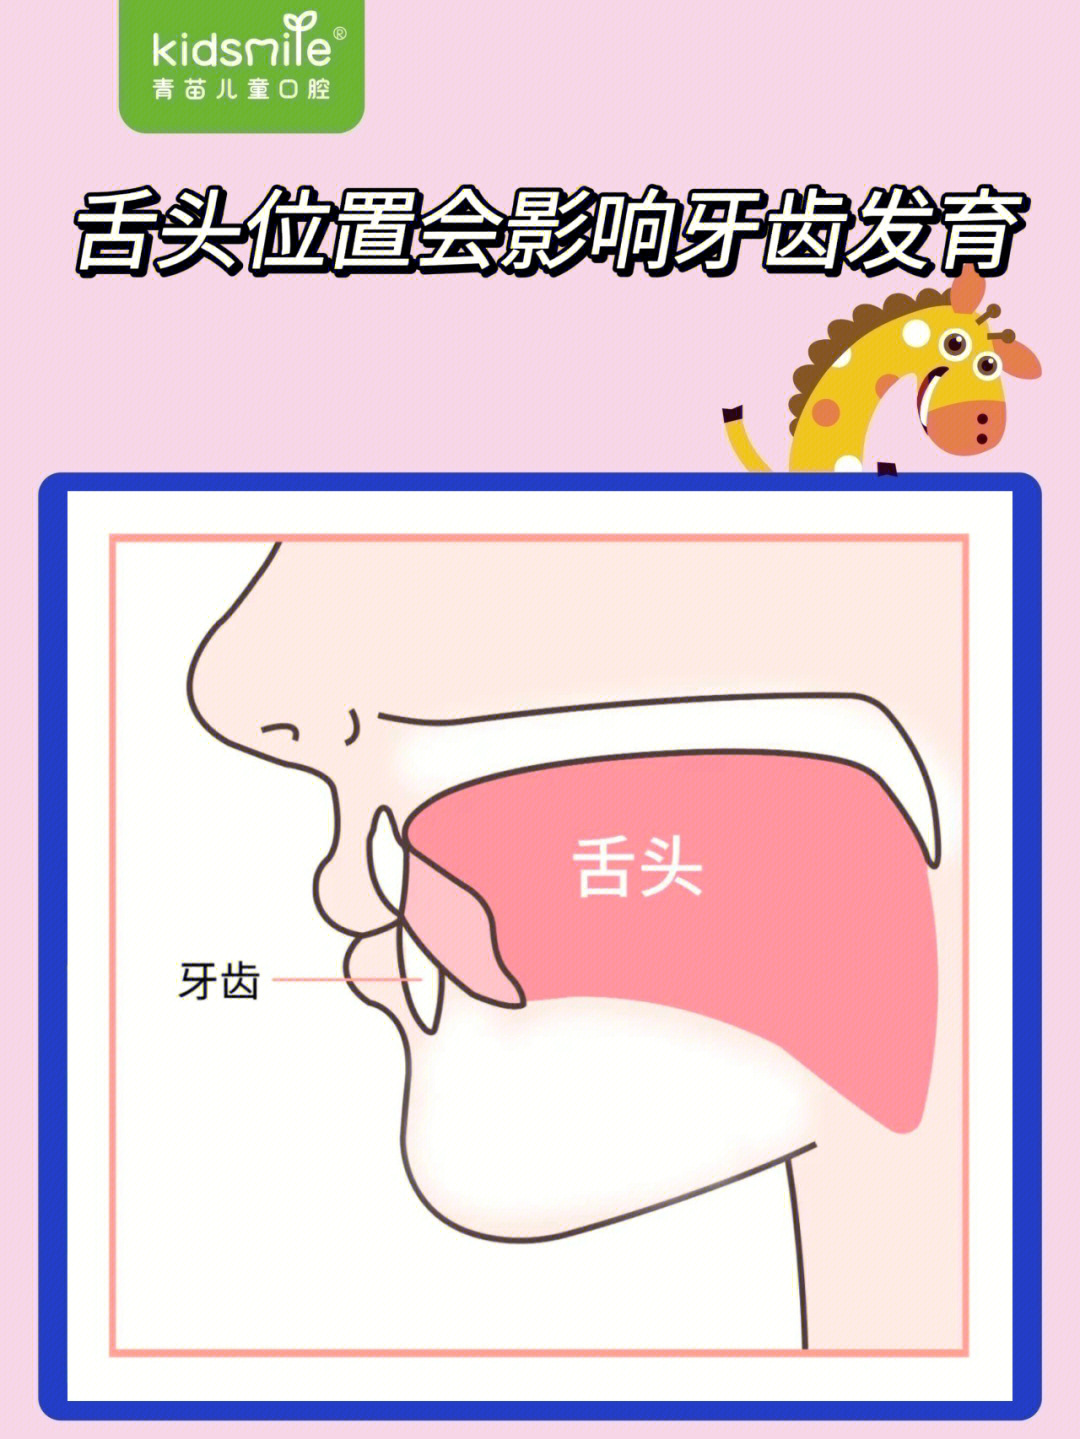 舌头对应部位的示意图图片